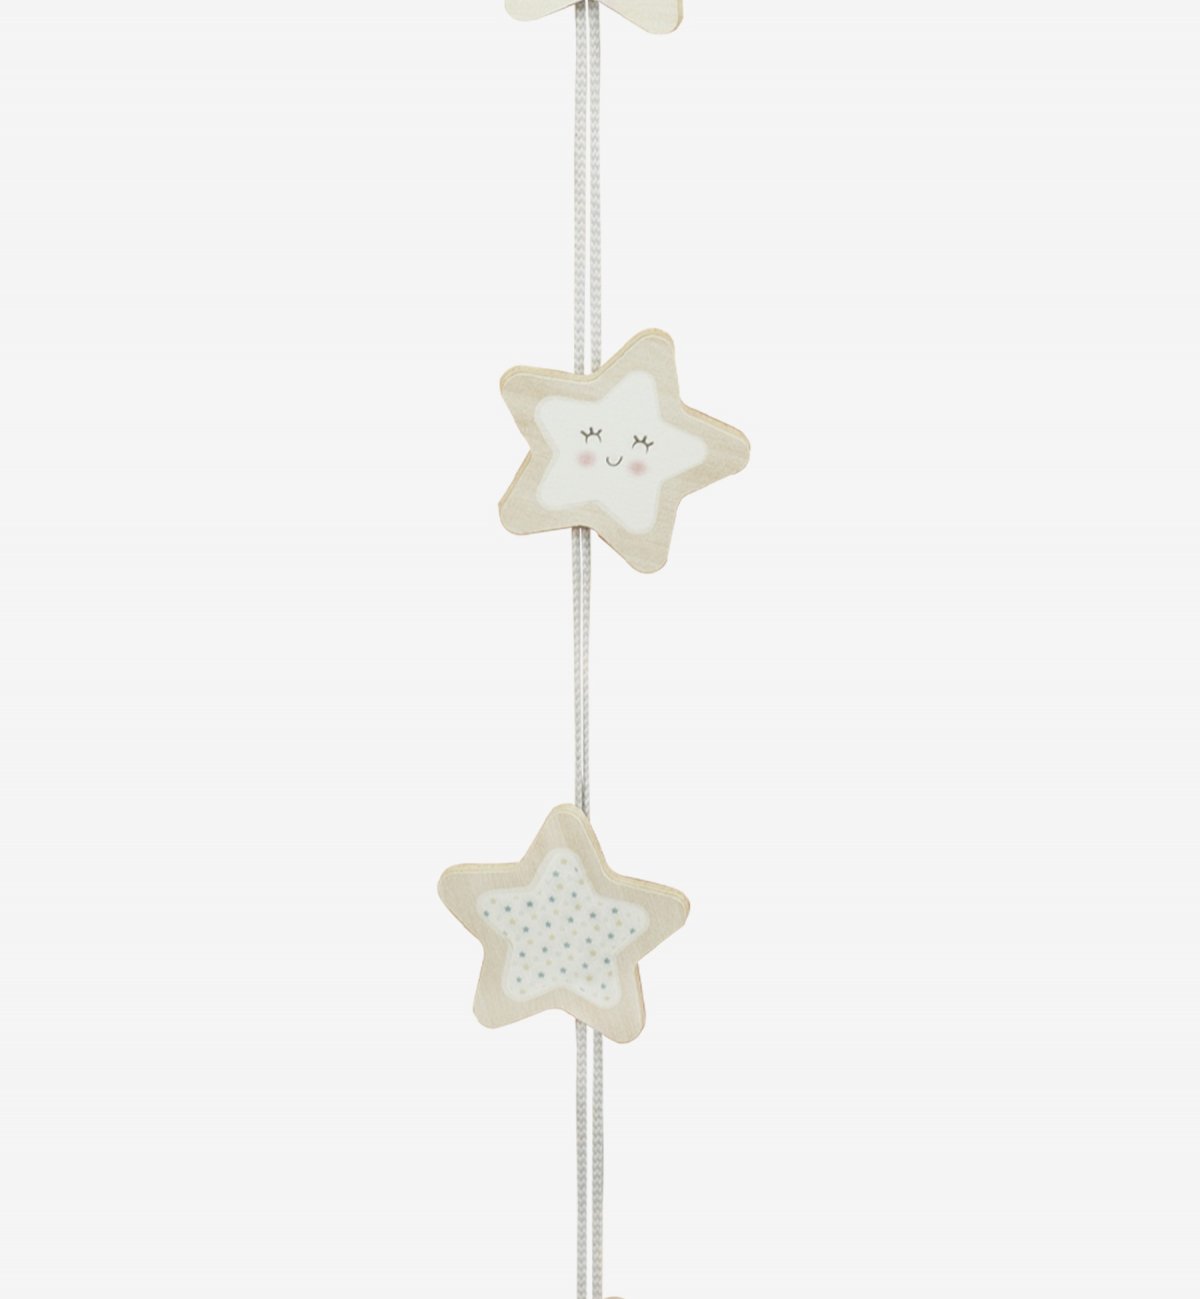 Ghirlanda decorativa in legno con motivi a stelle